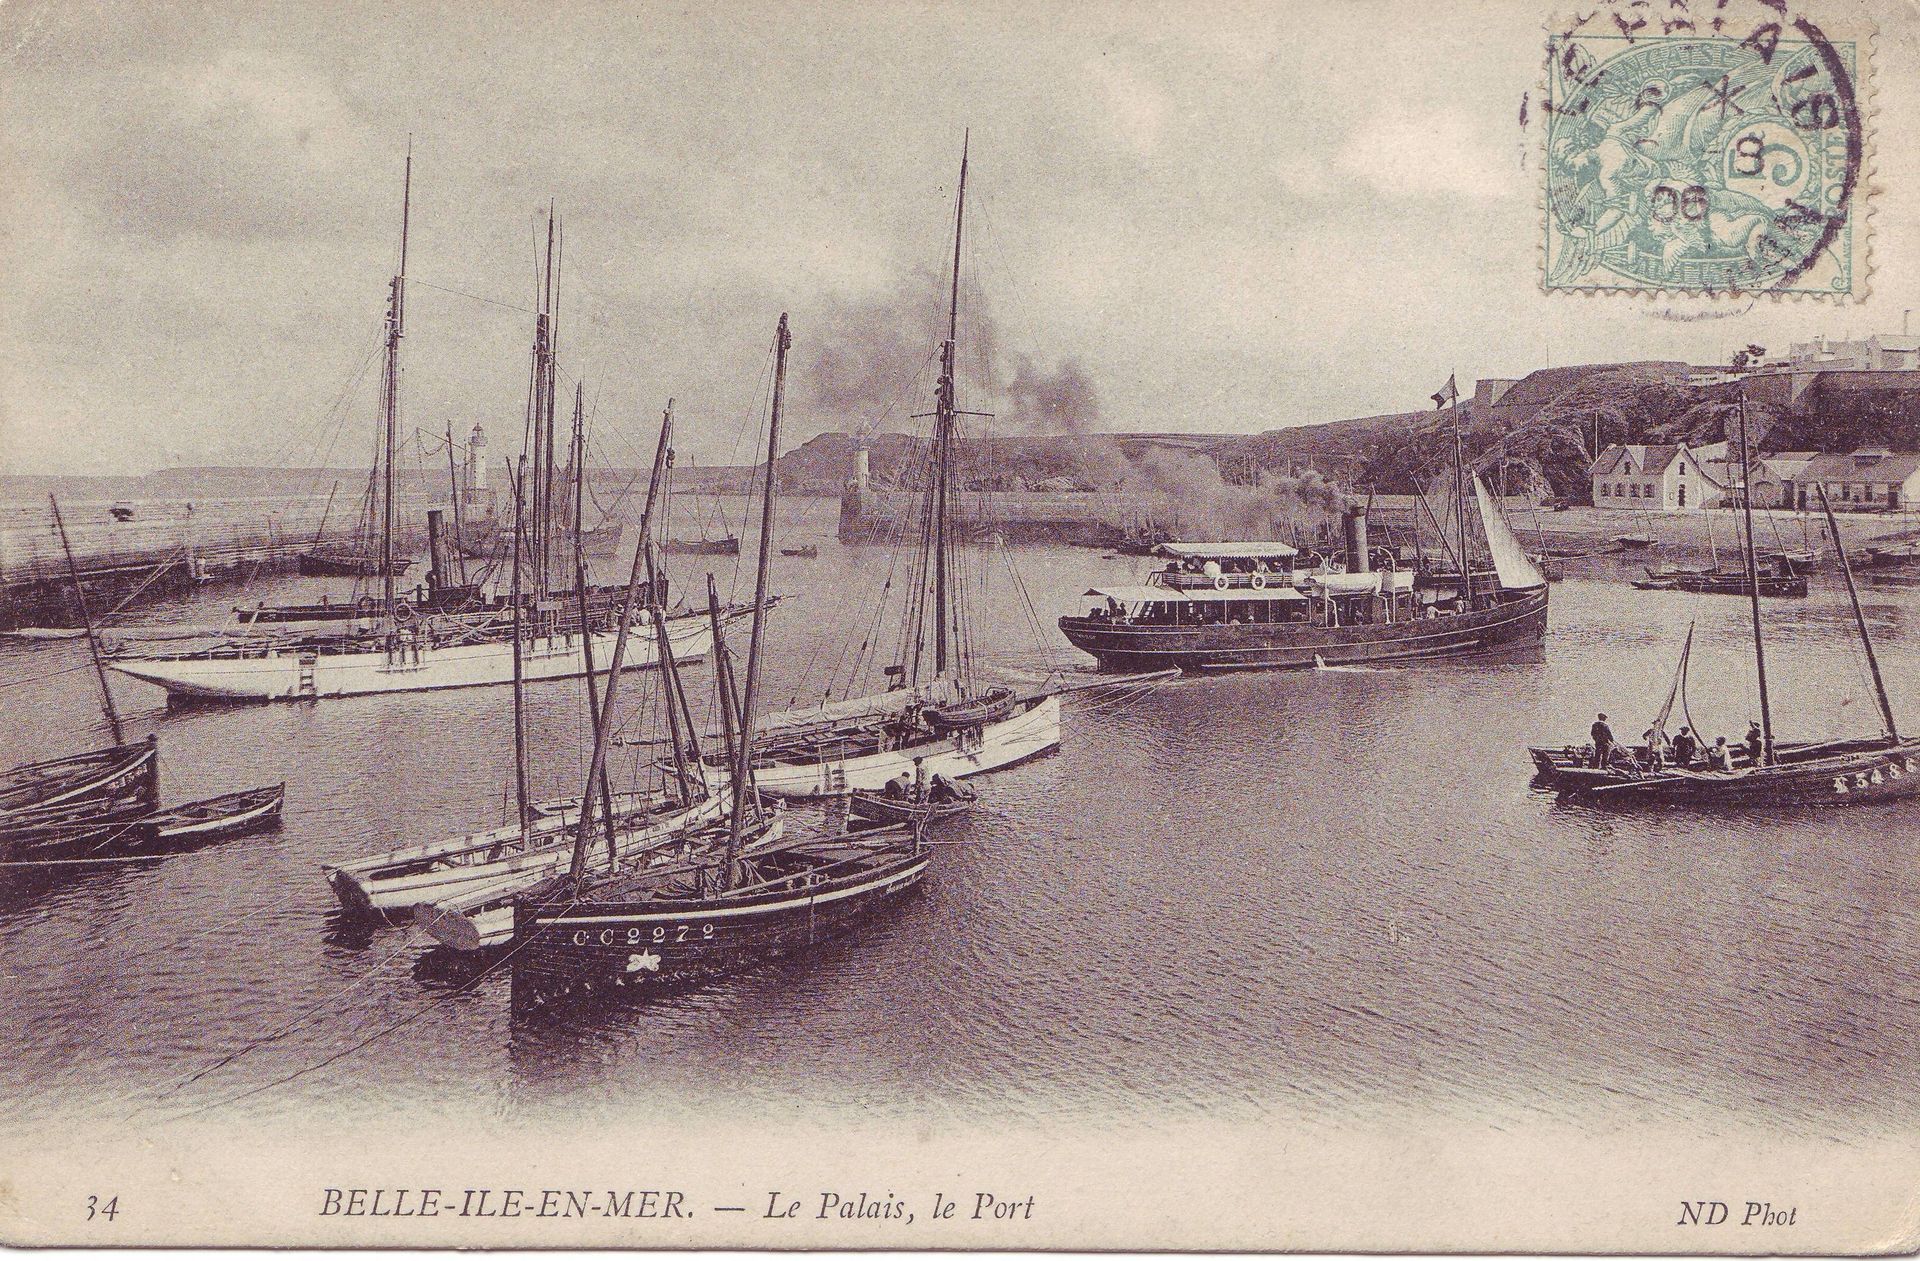 Le Saint Michel II à Belle-Île